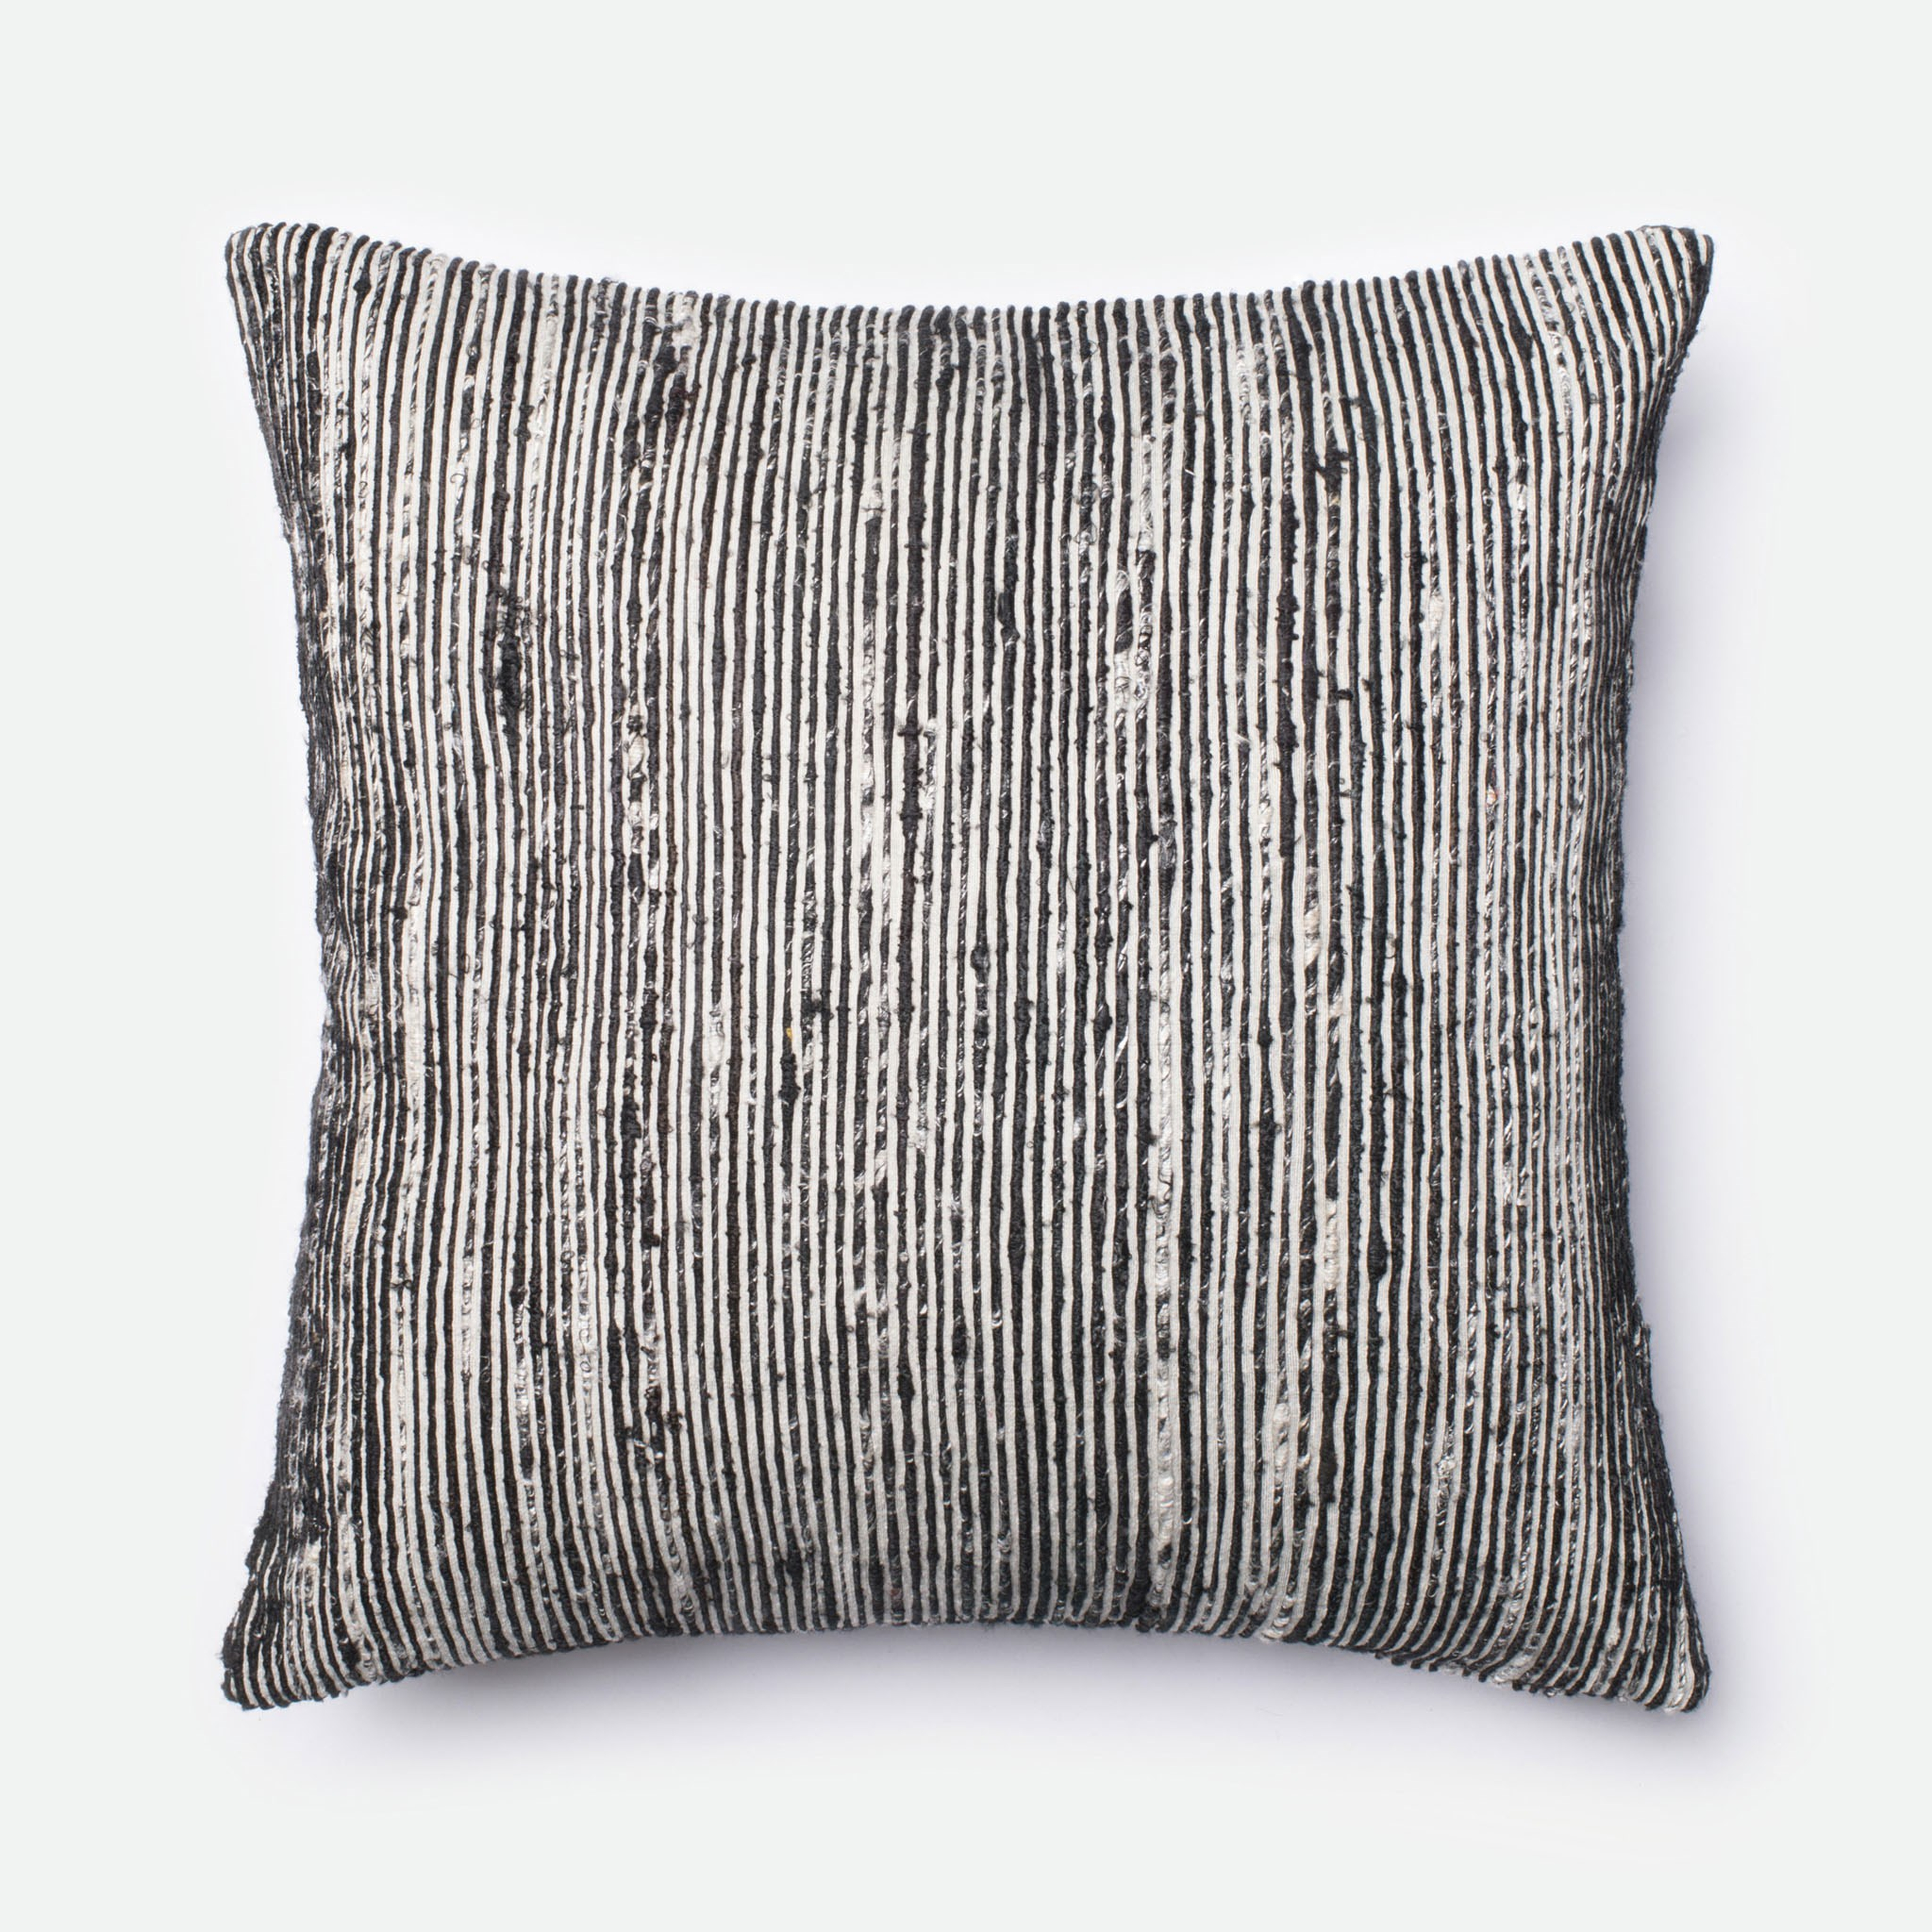 Sari Silk Throw Pillow, Black & White, 22" x 22" - Loma Threads